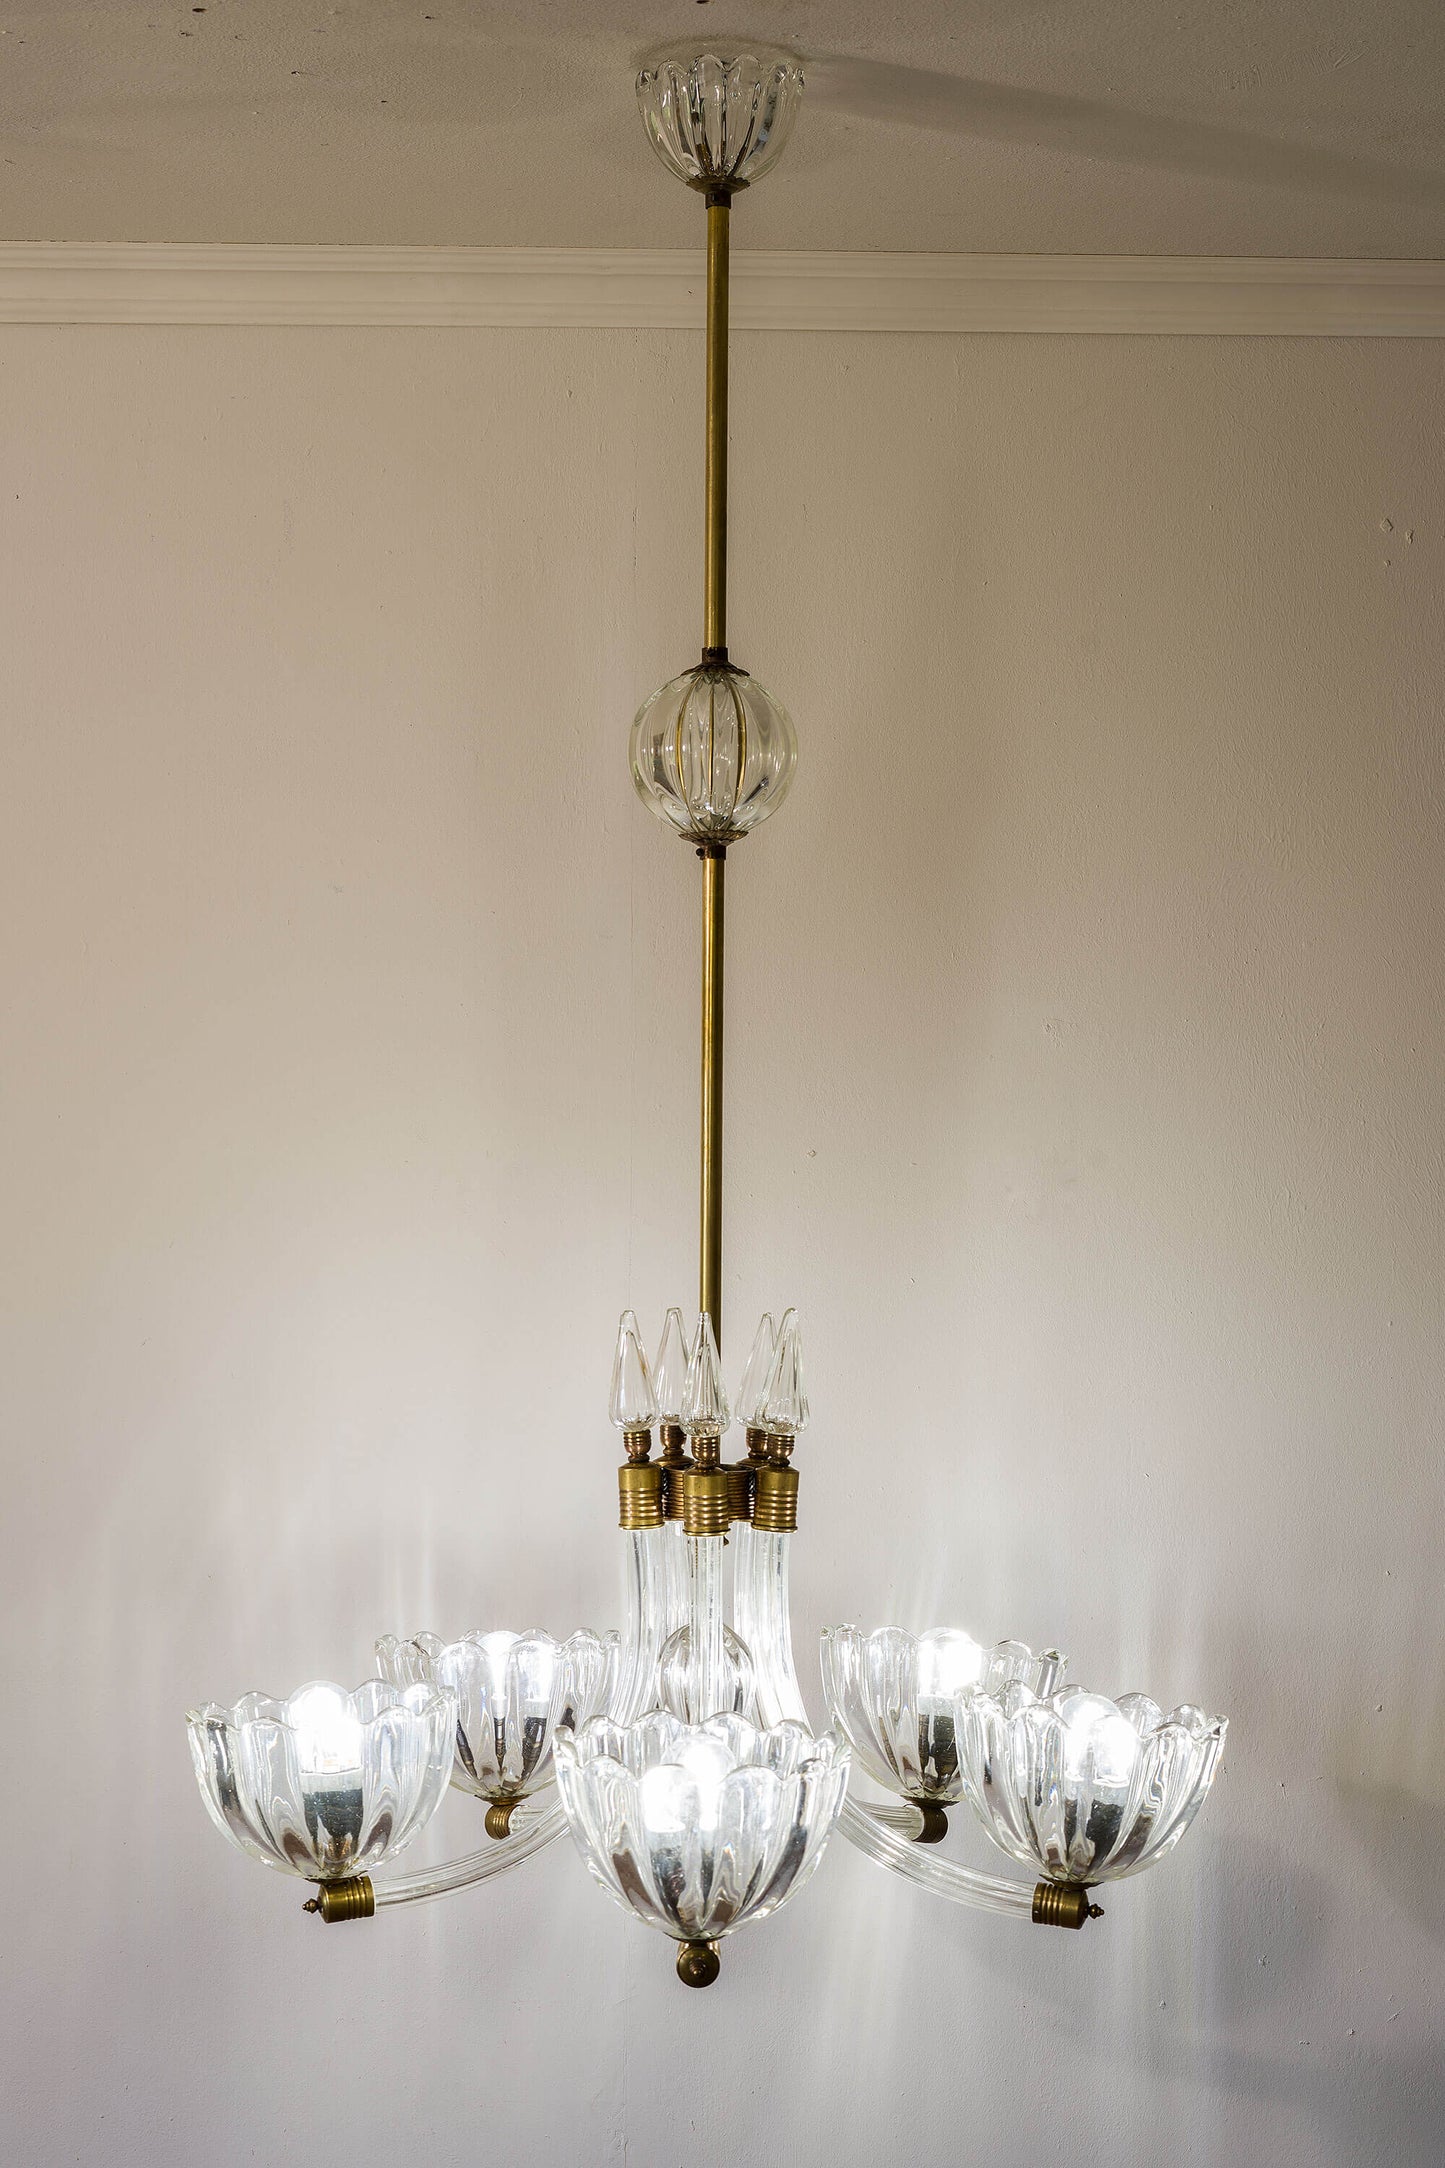 Raffinato lampadario Barovier & Toso con coppe in vetro a mezza luna, rifinito con dettagli in ottone, creando un'opera d'arte illuminante. | Lo Stile Italiano